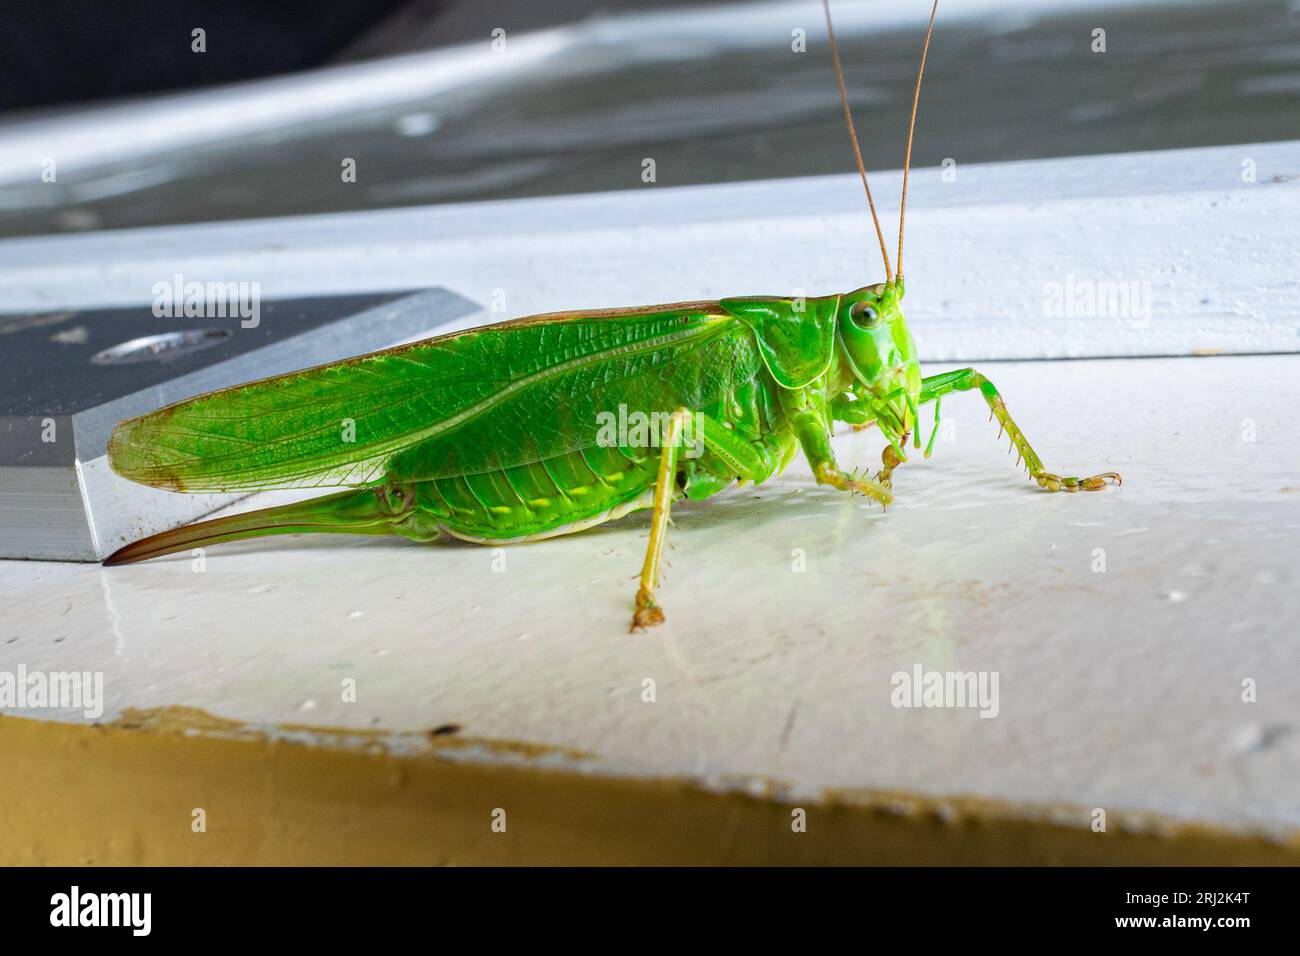 Detailreiche Aufnahme einer grasshopper in leuchtendem Grün Stockfoto